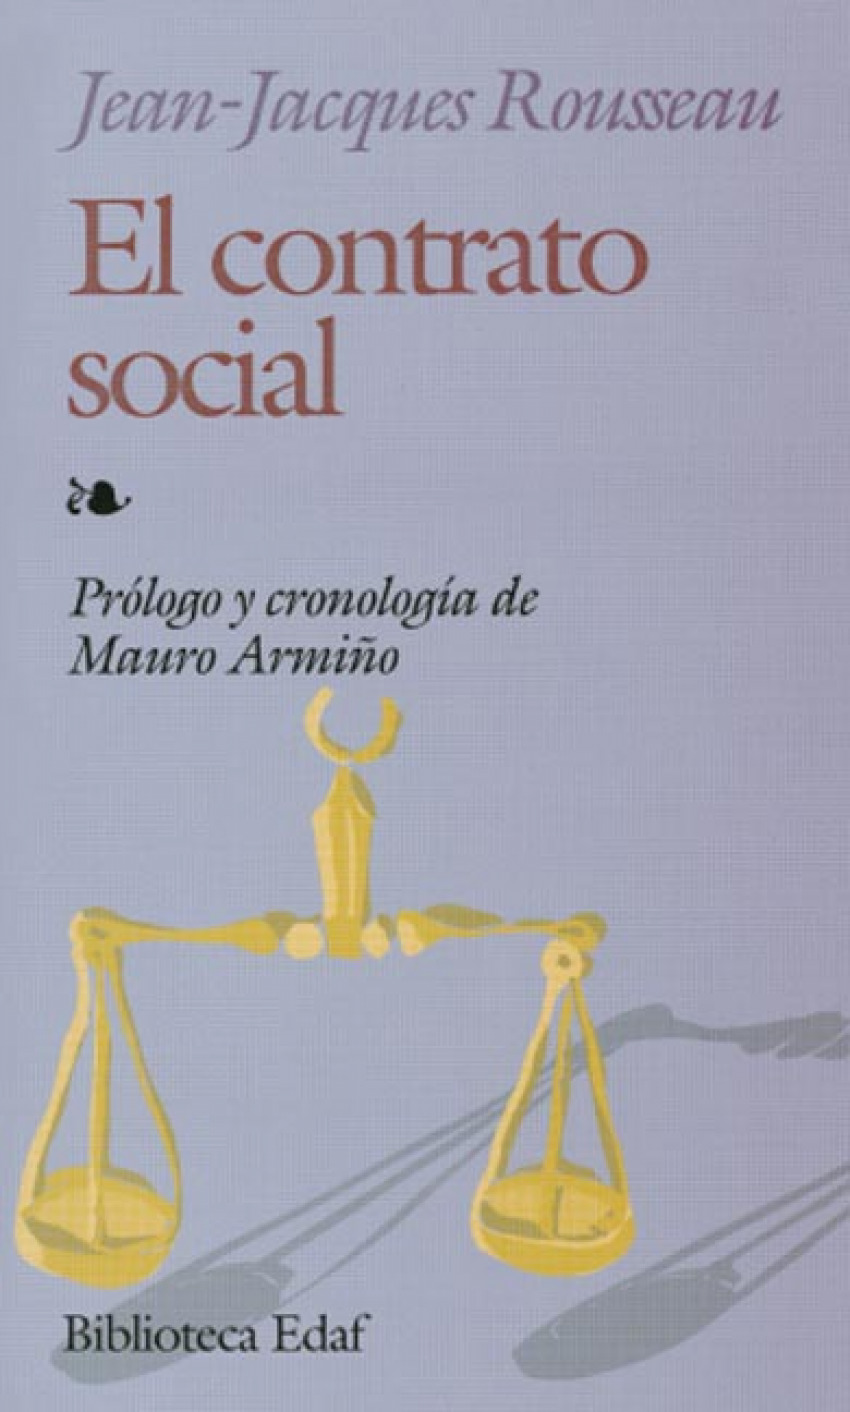 El contrato social - Rousseau, Jean-Jacques